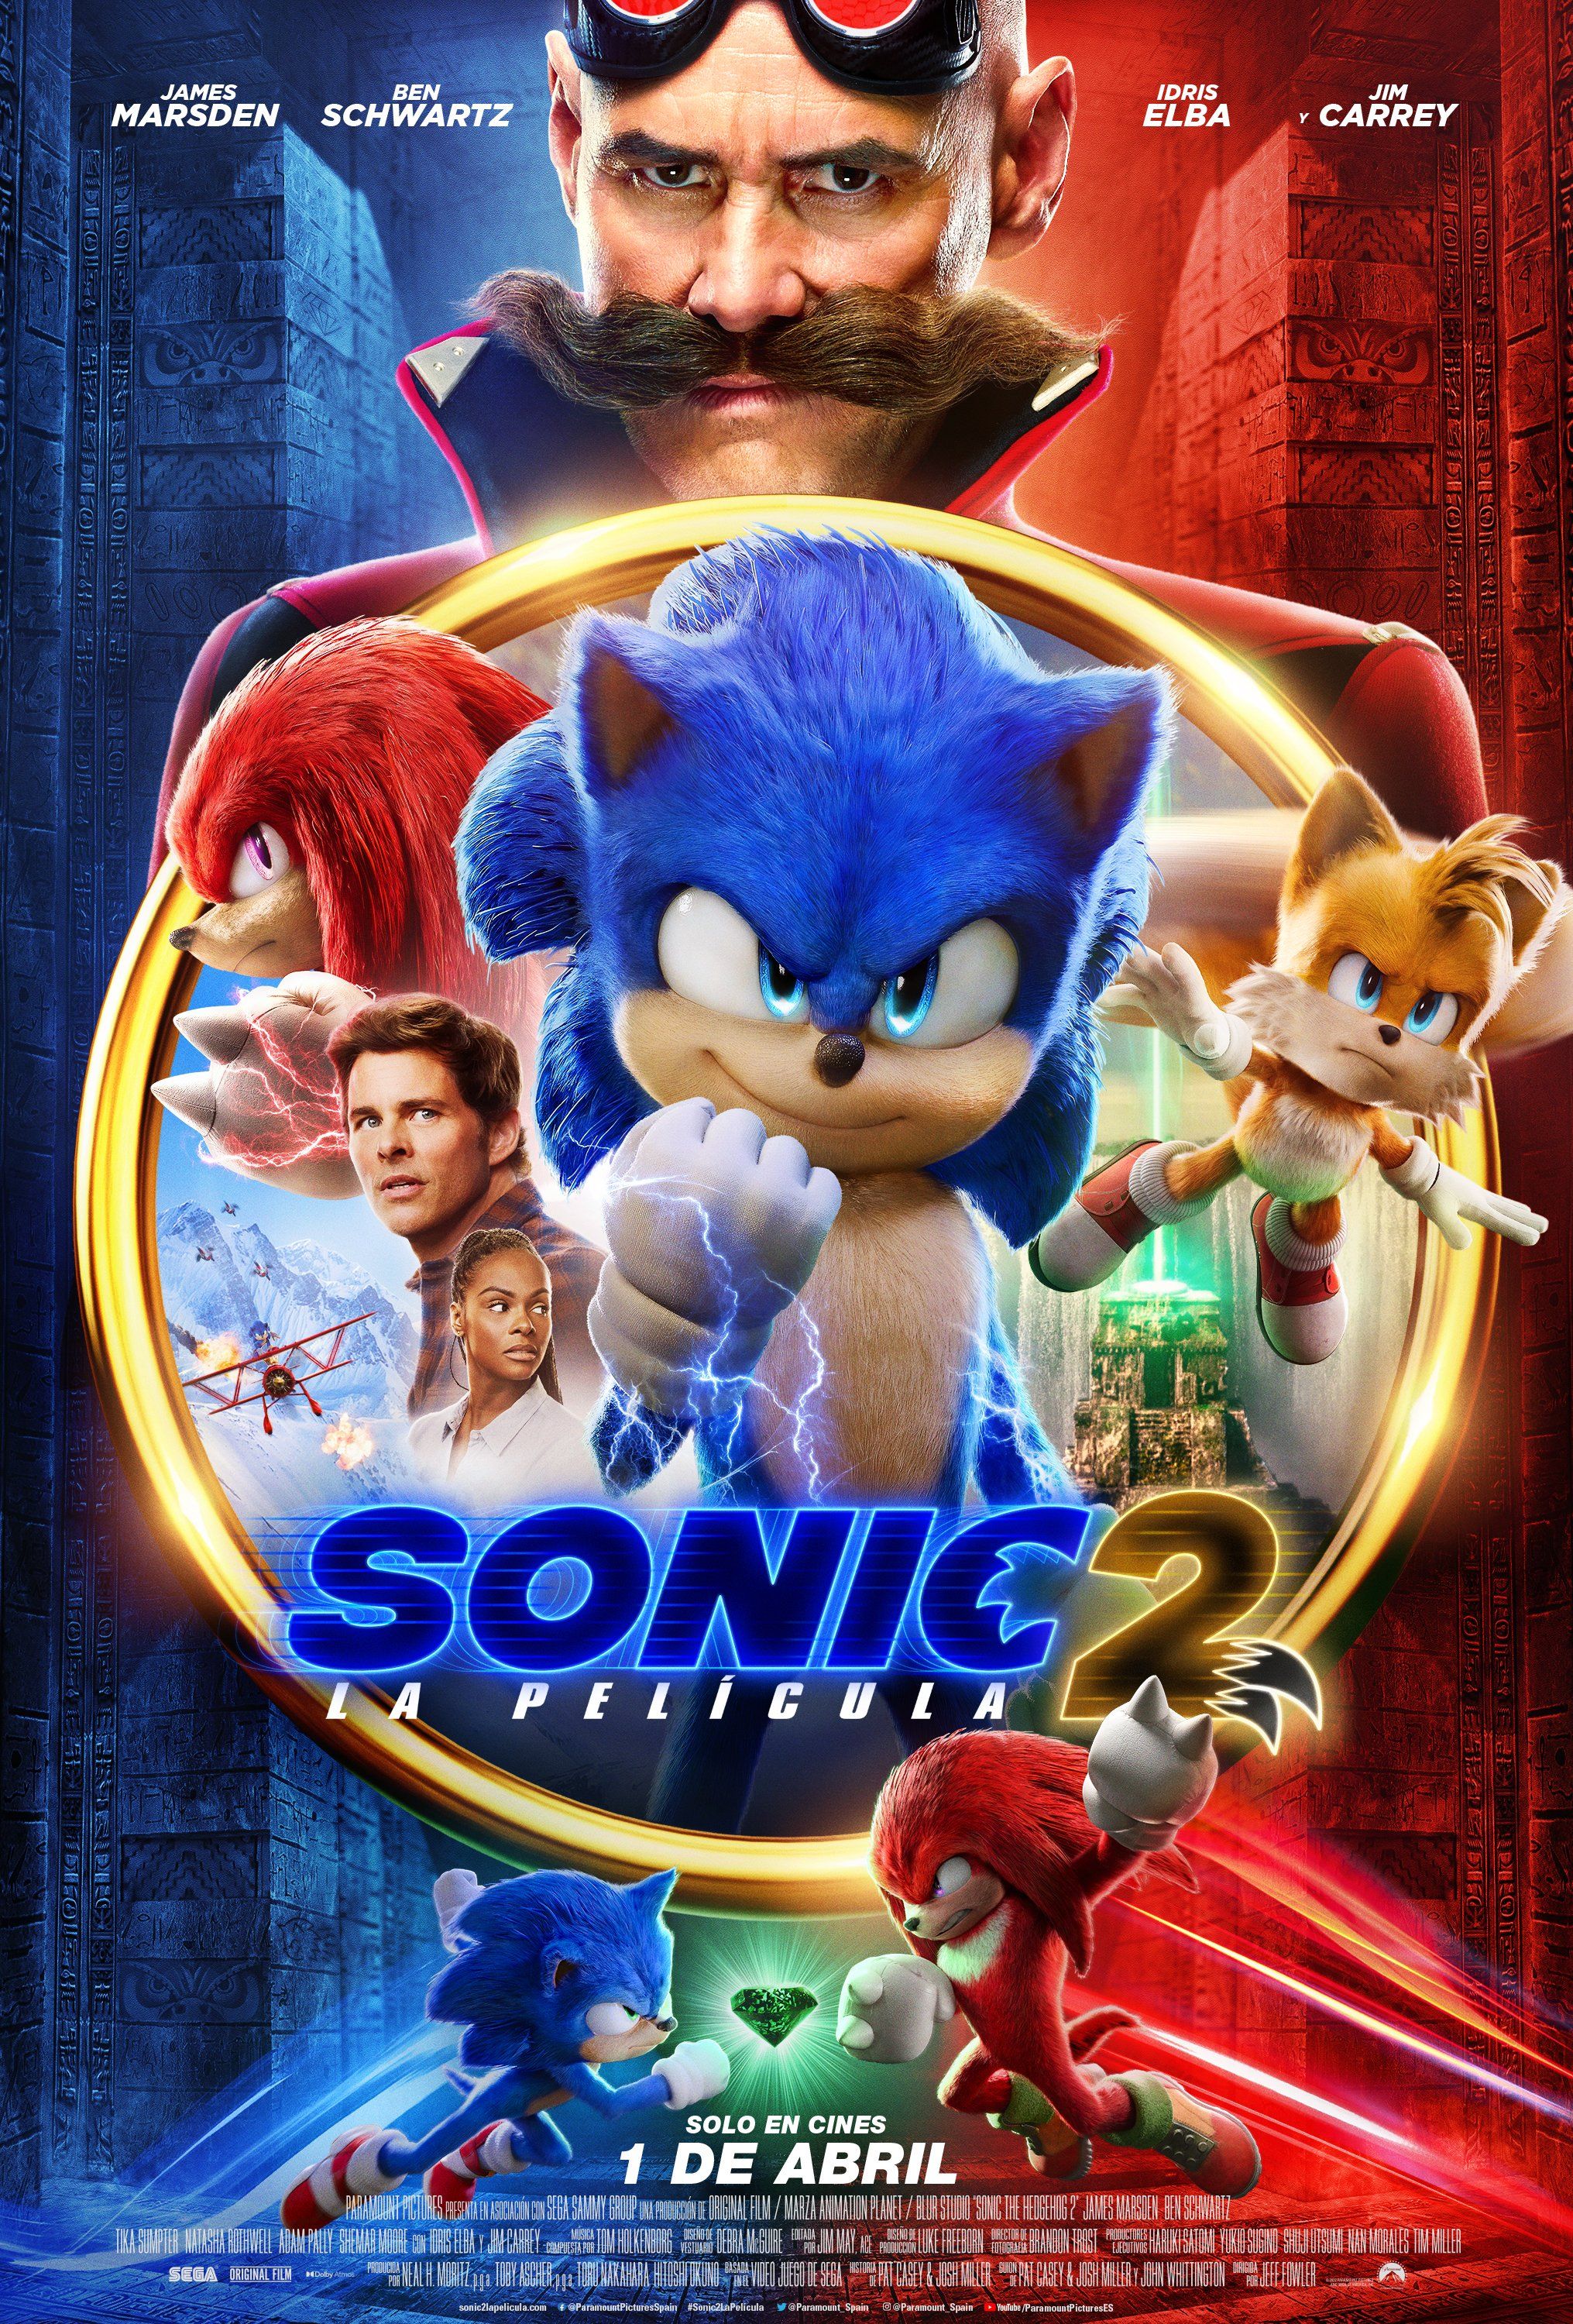 Sonic 2 La película: trailer, póster, fecha de estreno...